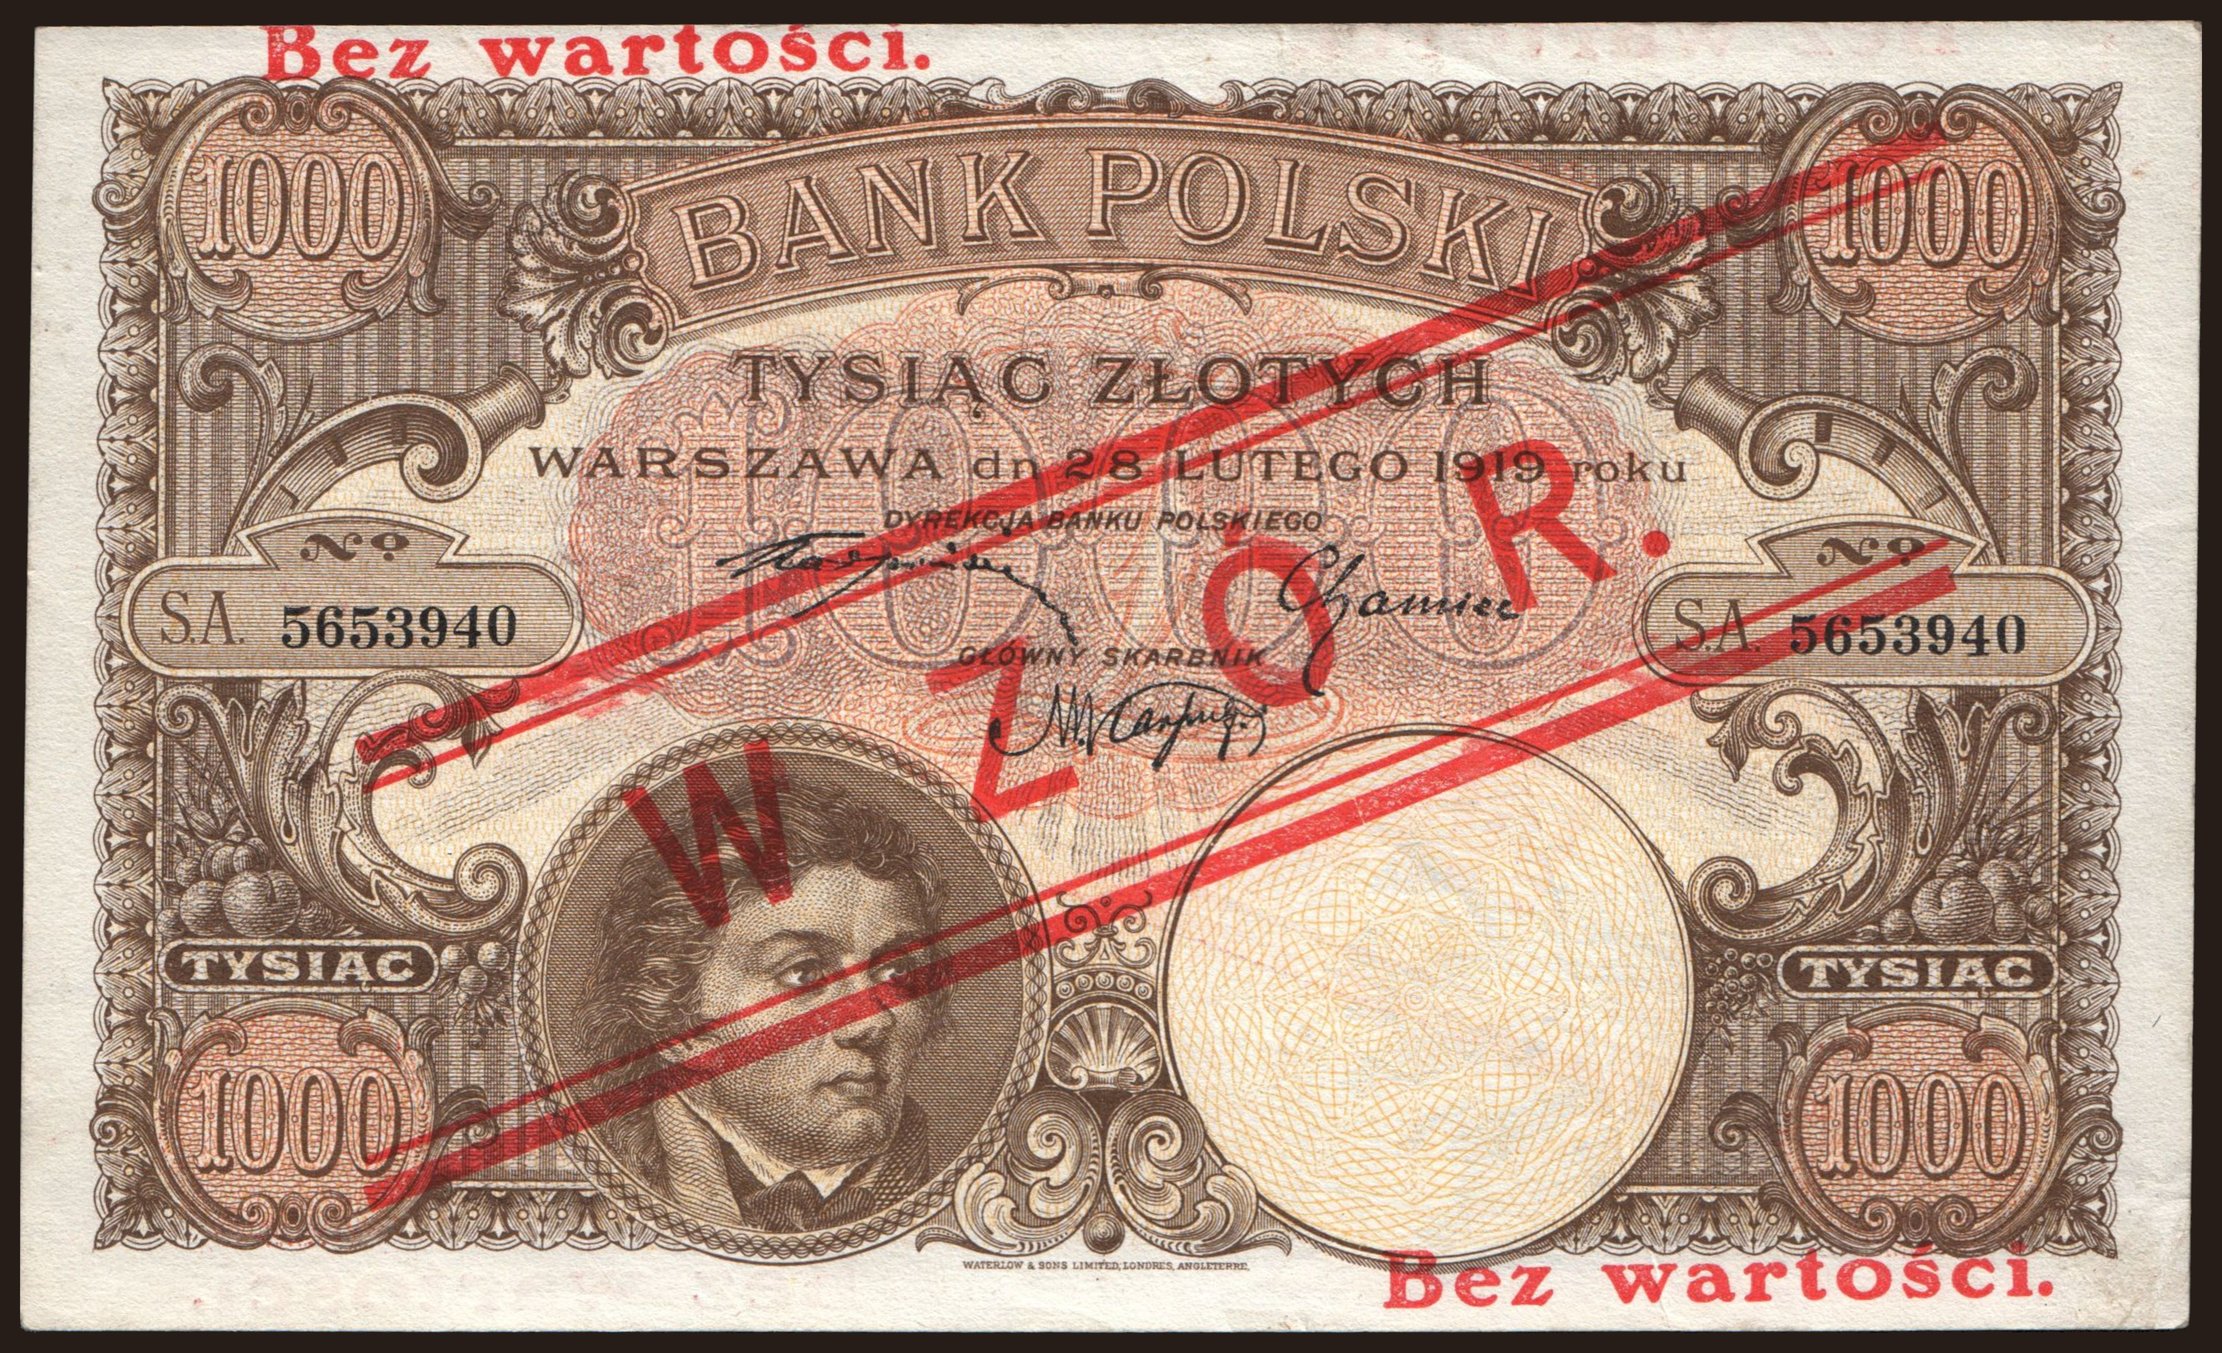 1000 zlotych, 1919, WZOR